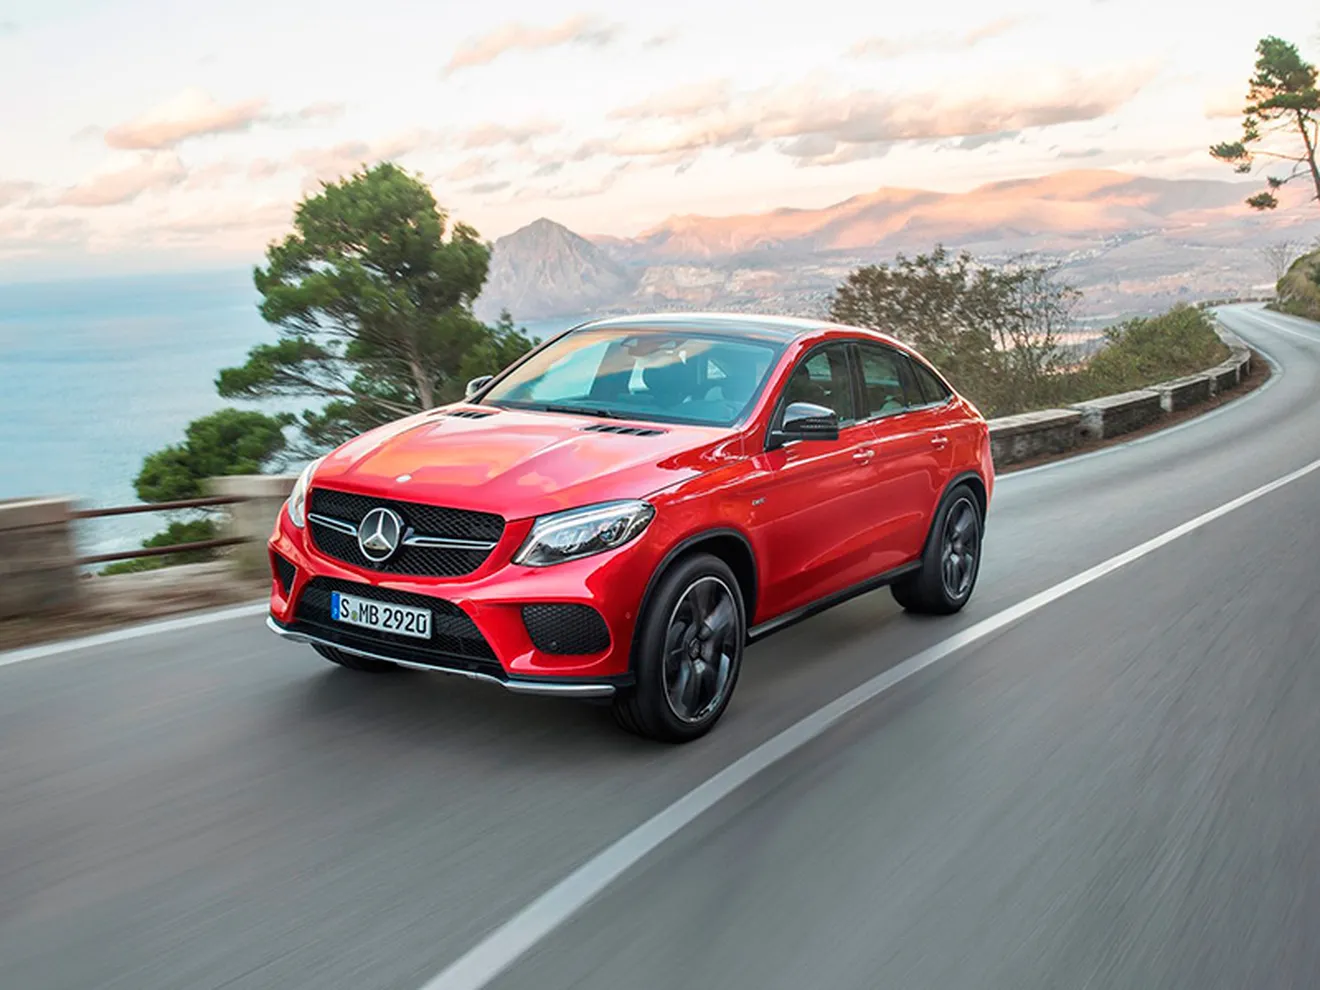 Mercedes GLE Coupé 2015, ya hay precios para España